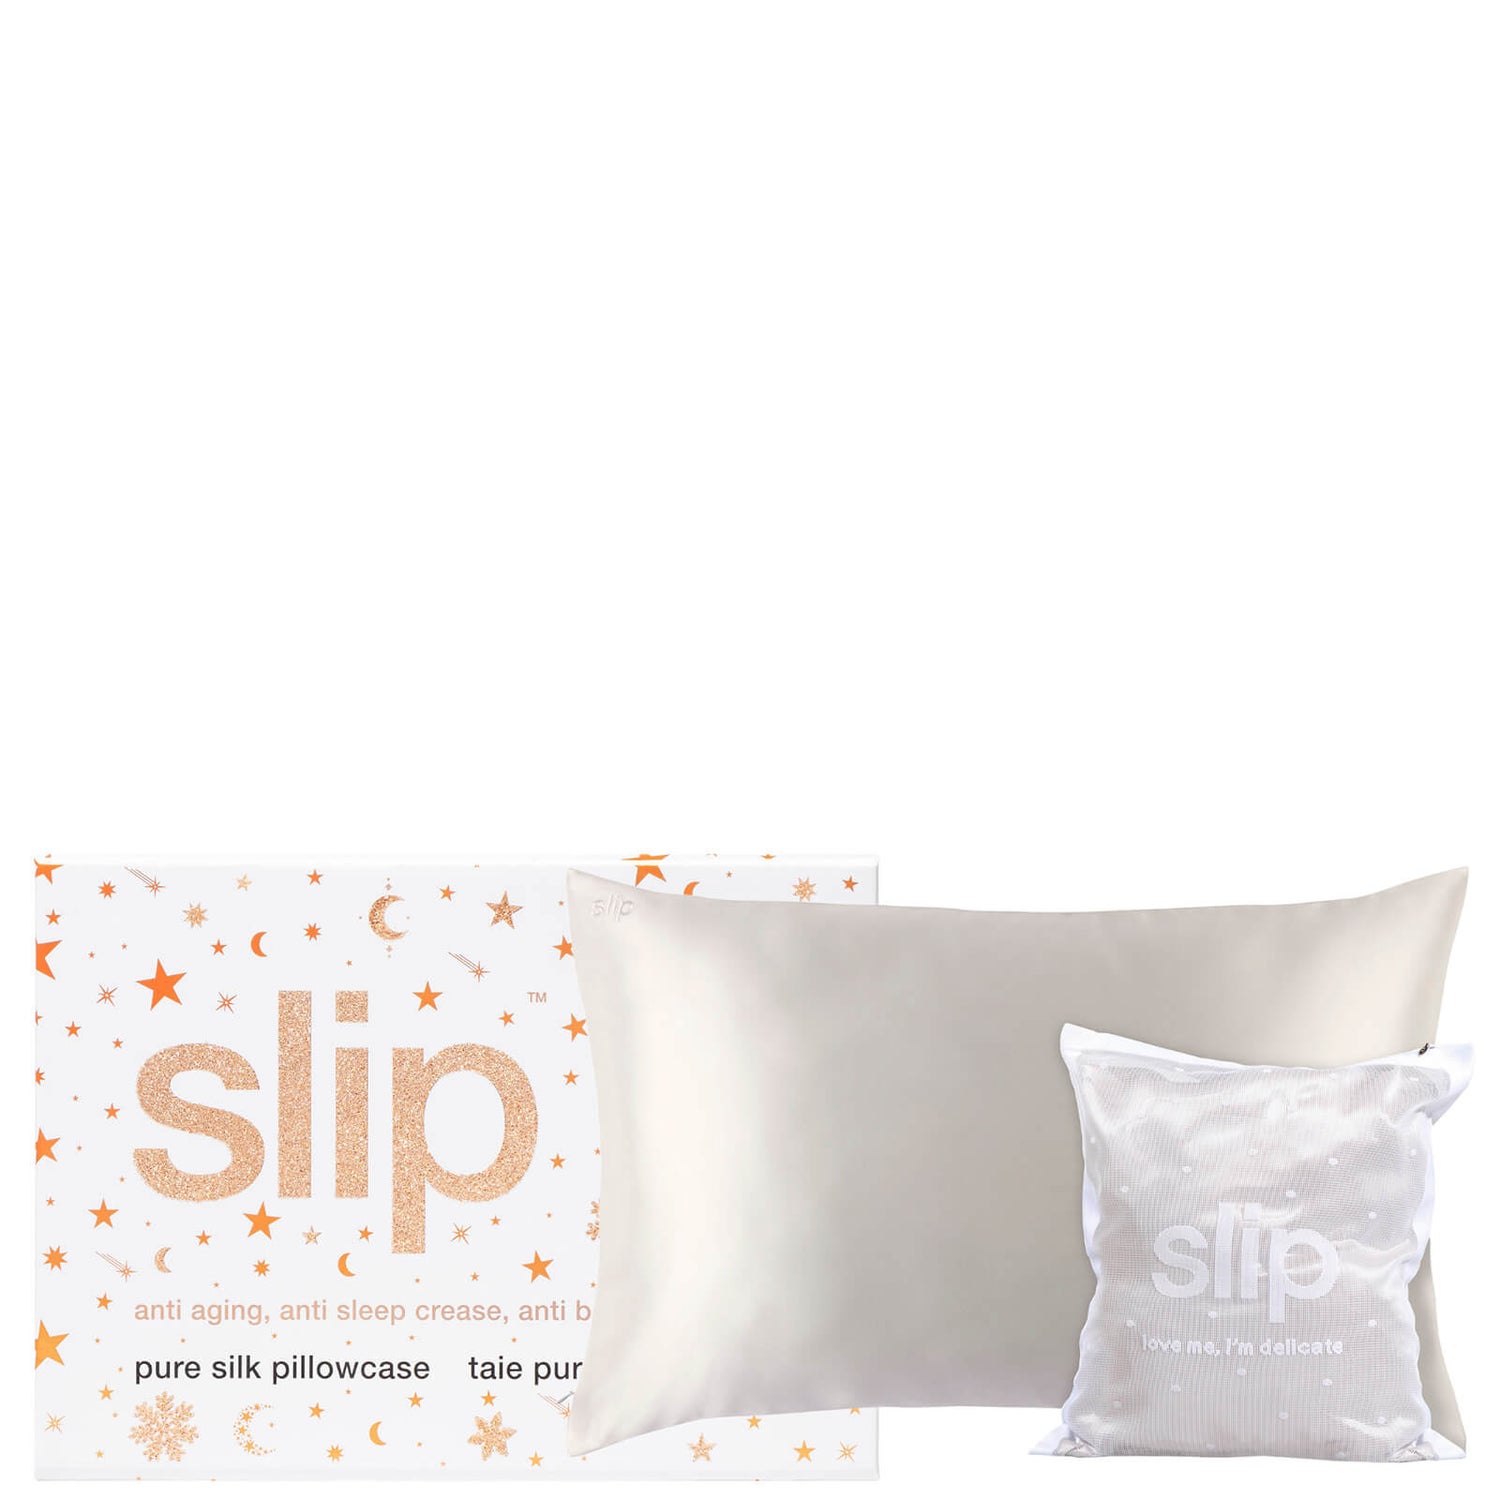 Slip Love Me I'm Delicate Gift Set - White (Worth £100.00)